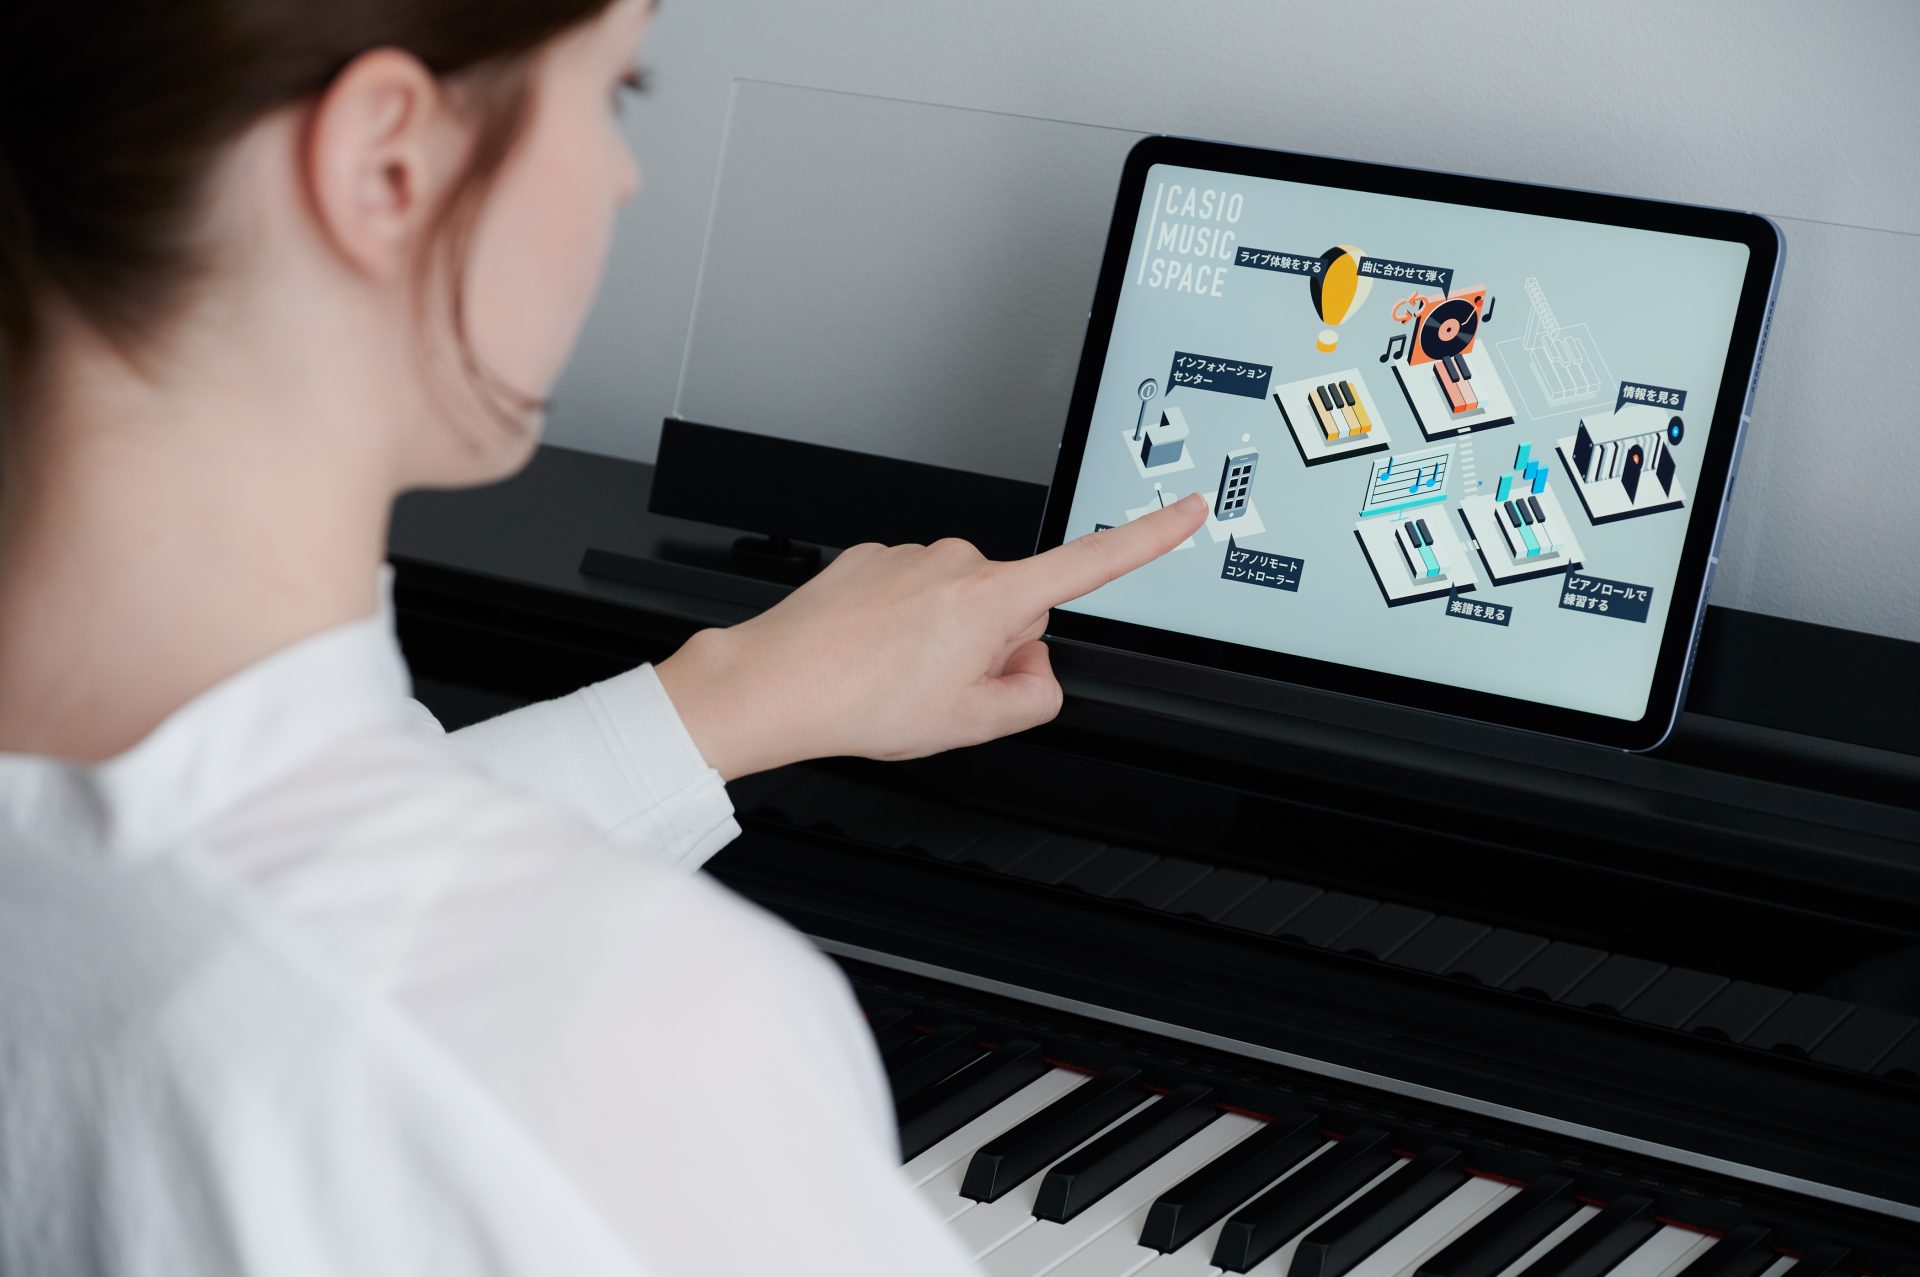 簡単な操作でピアノの設定などが行える専用アプリ「CASIO MUSIC SPACE」